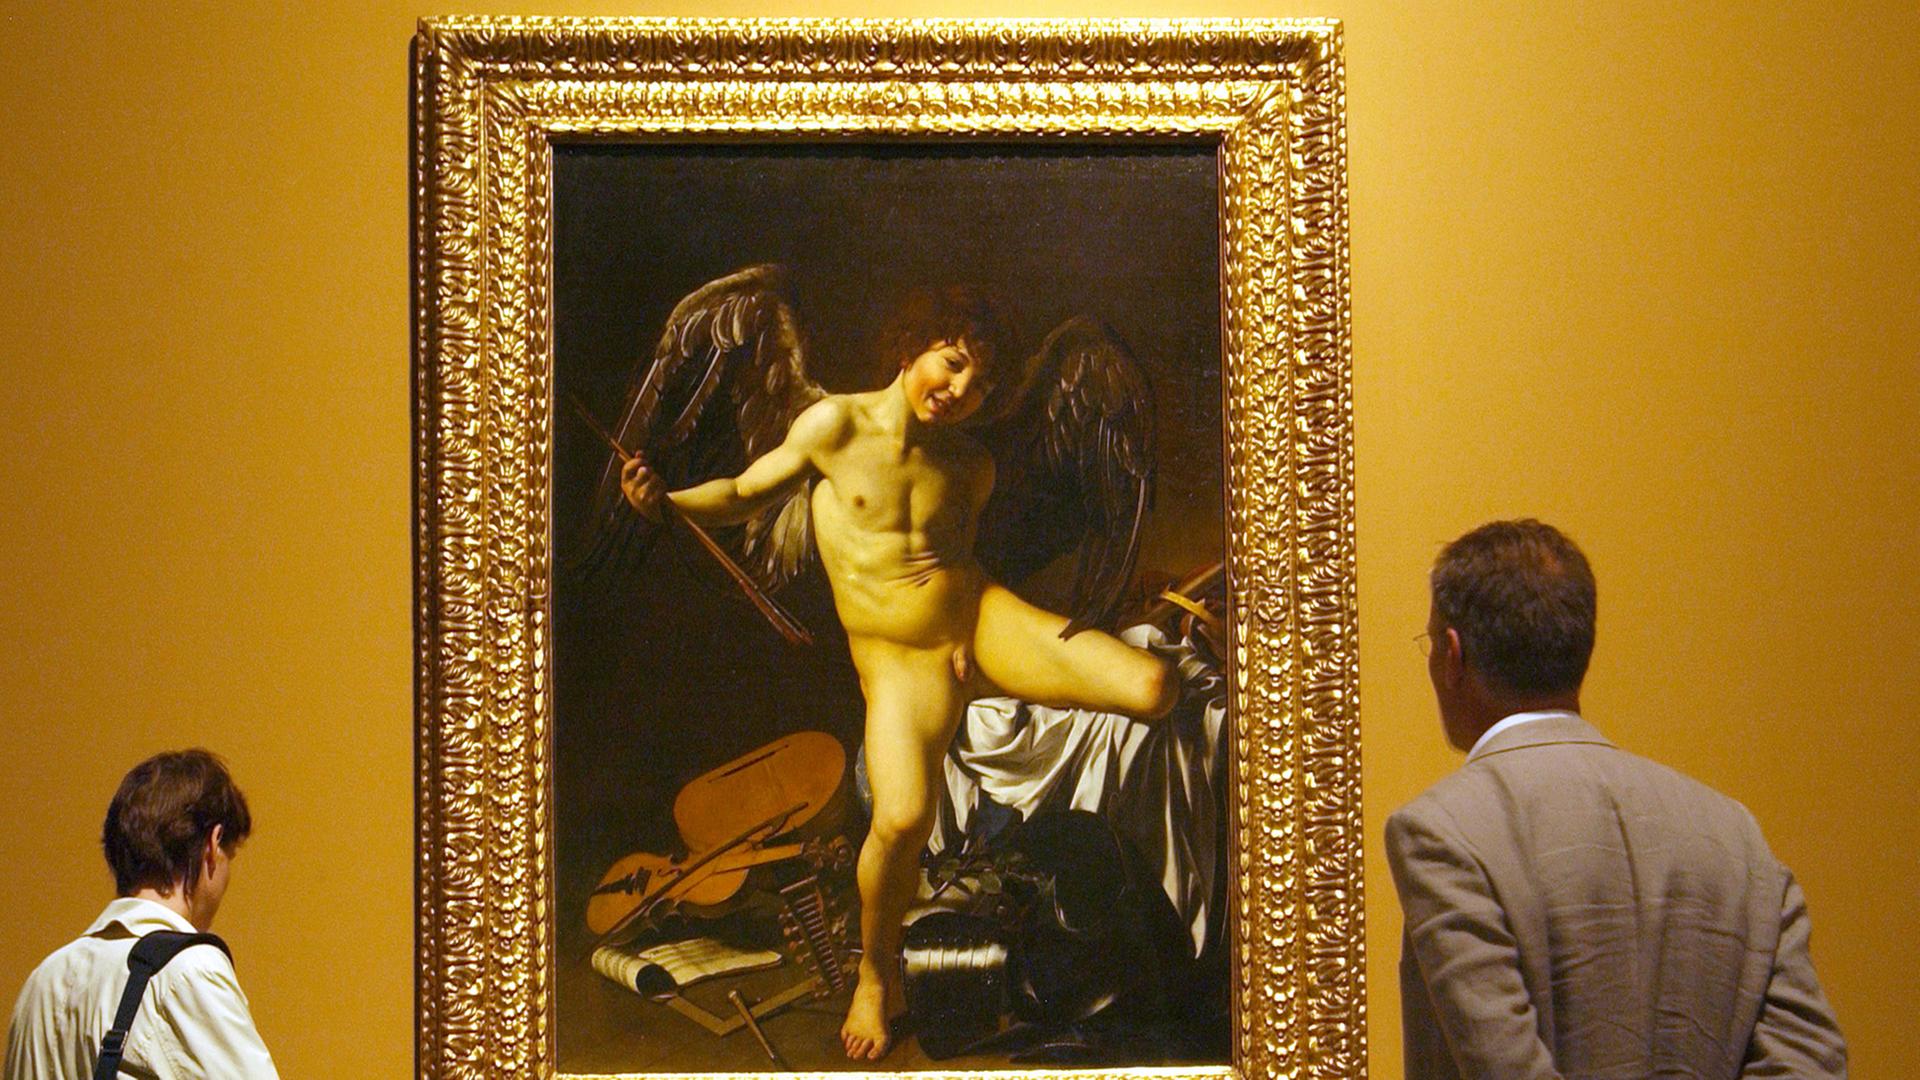 Vor dem Bild "Amor als Sieger" des italienischen Barockkünstlers Michelangelo Merisi, besser bekannt als Caravaggio (1571-1610), stehen Betrachter am Freitag (08.09.2006) in Düsseldorf im Museum Kunstpalast bei einem Presserundgang.